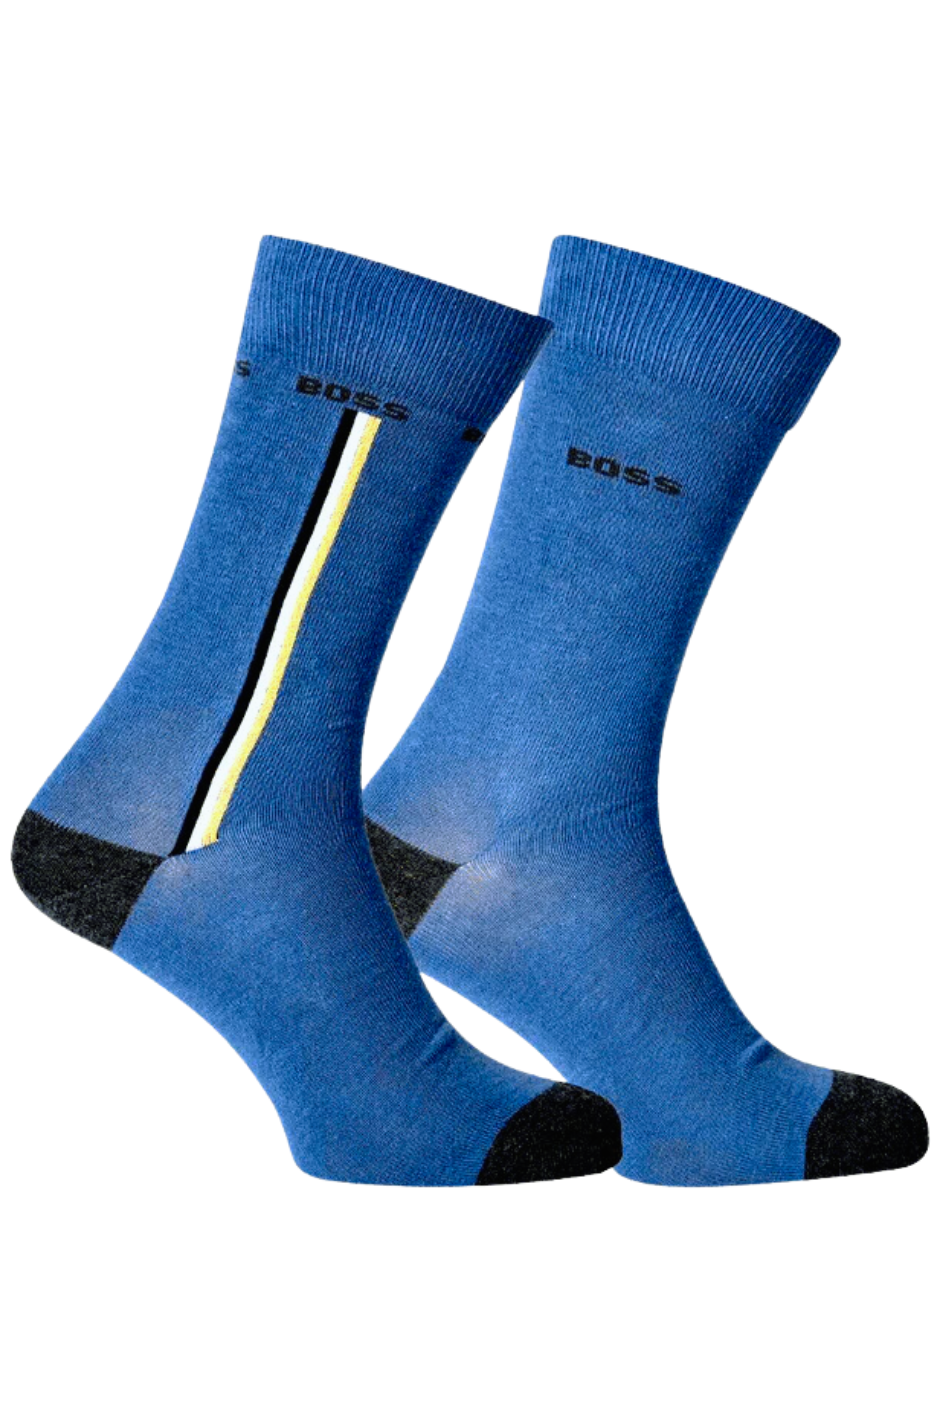 BOSS 2 Pack Men's Iconic Socks